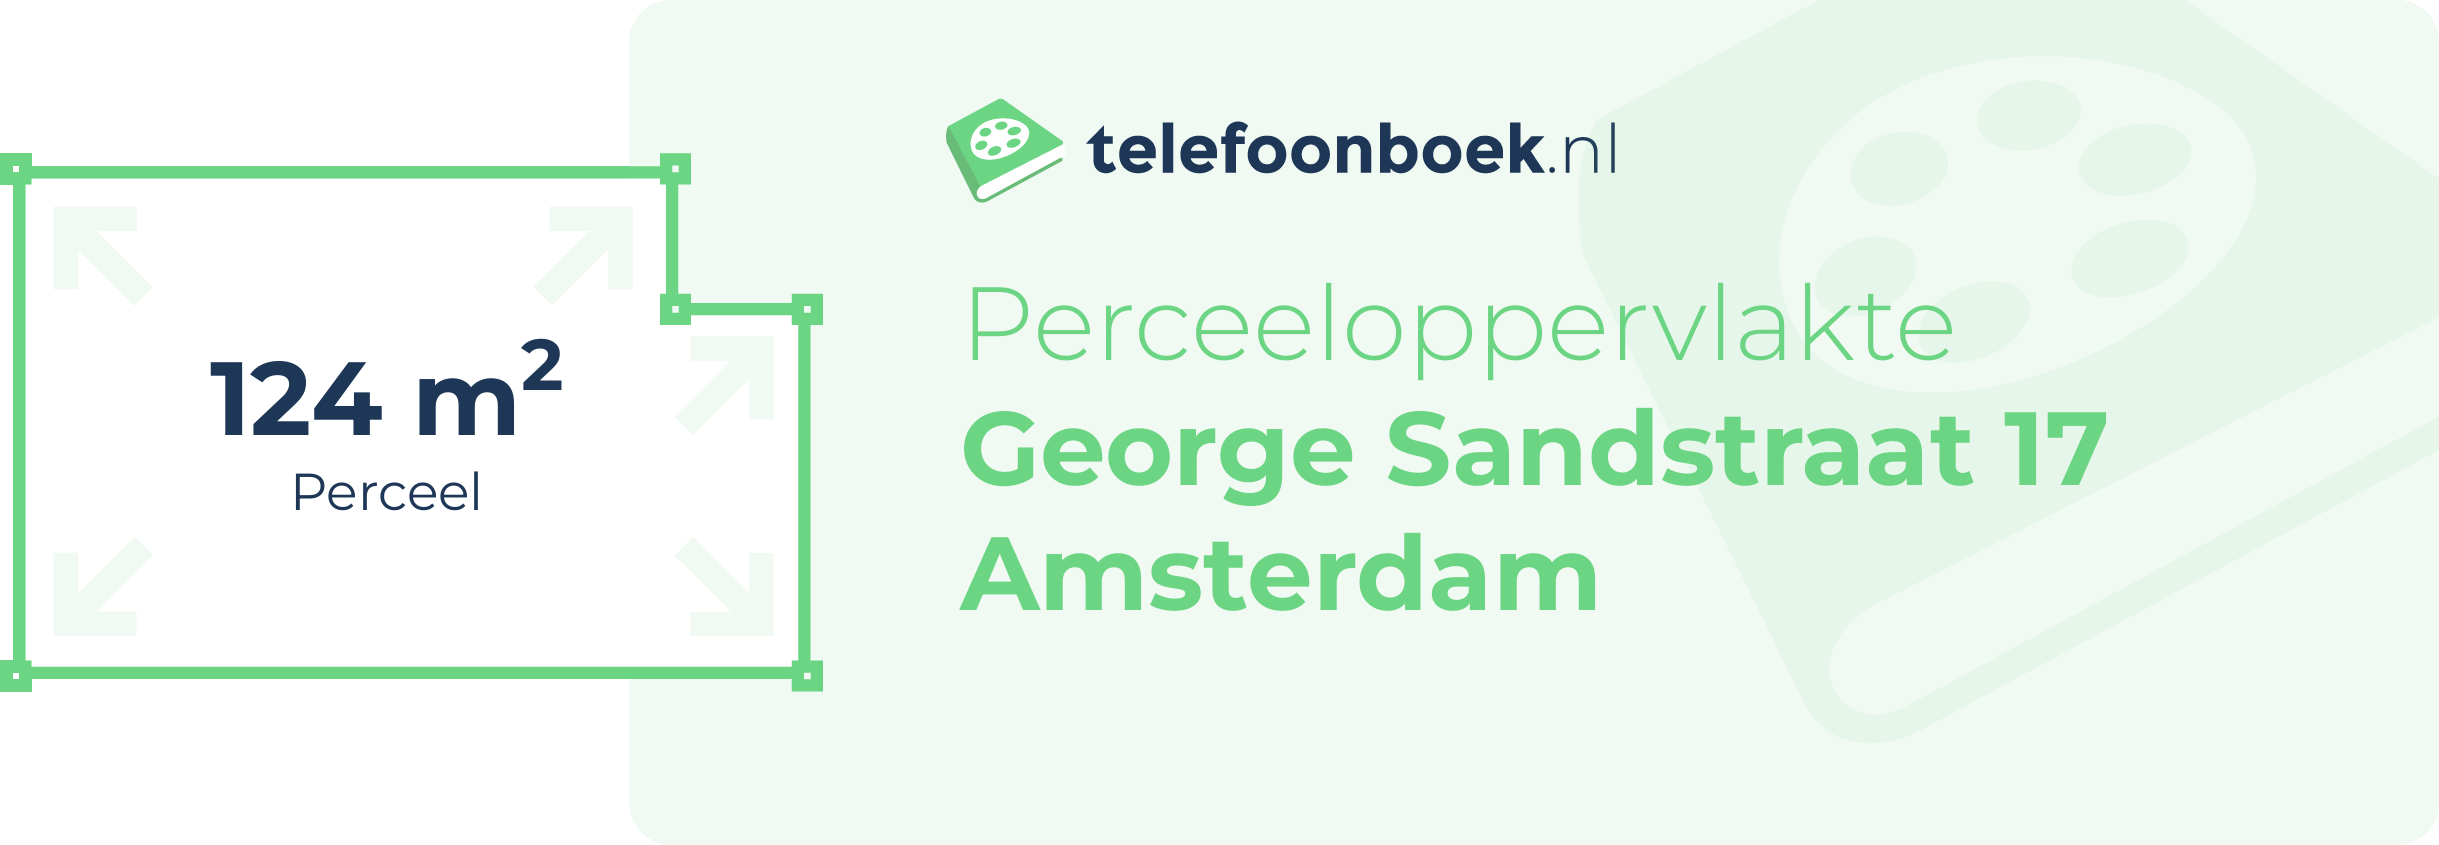 Perceeloppervlakte George Sandstraat 17 Amsterdam